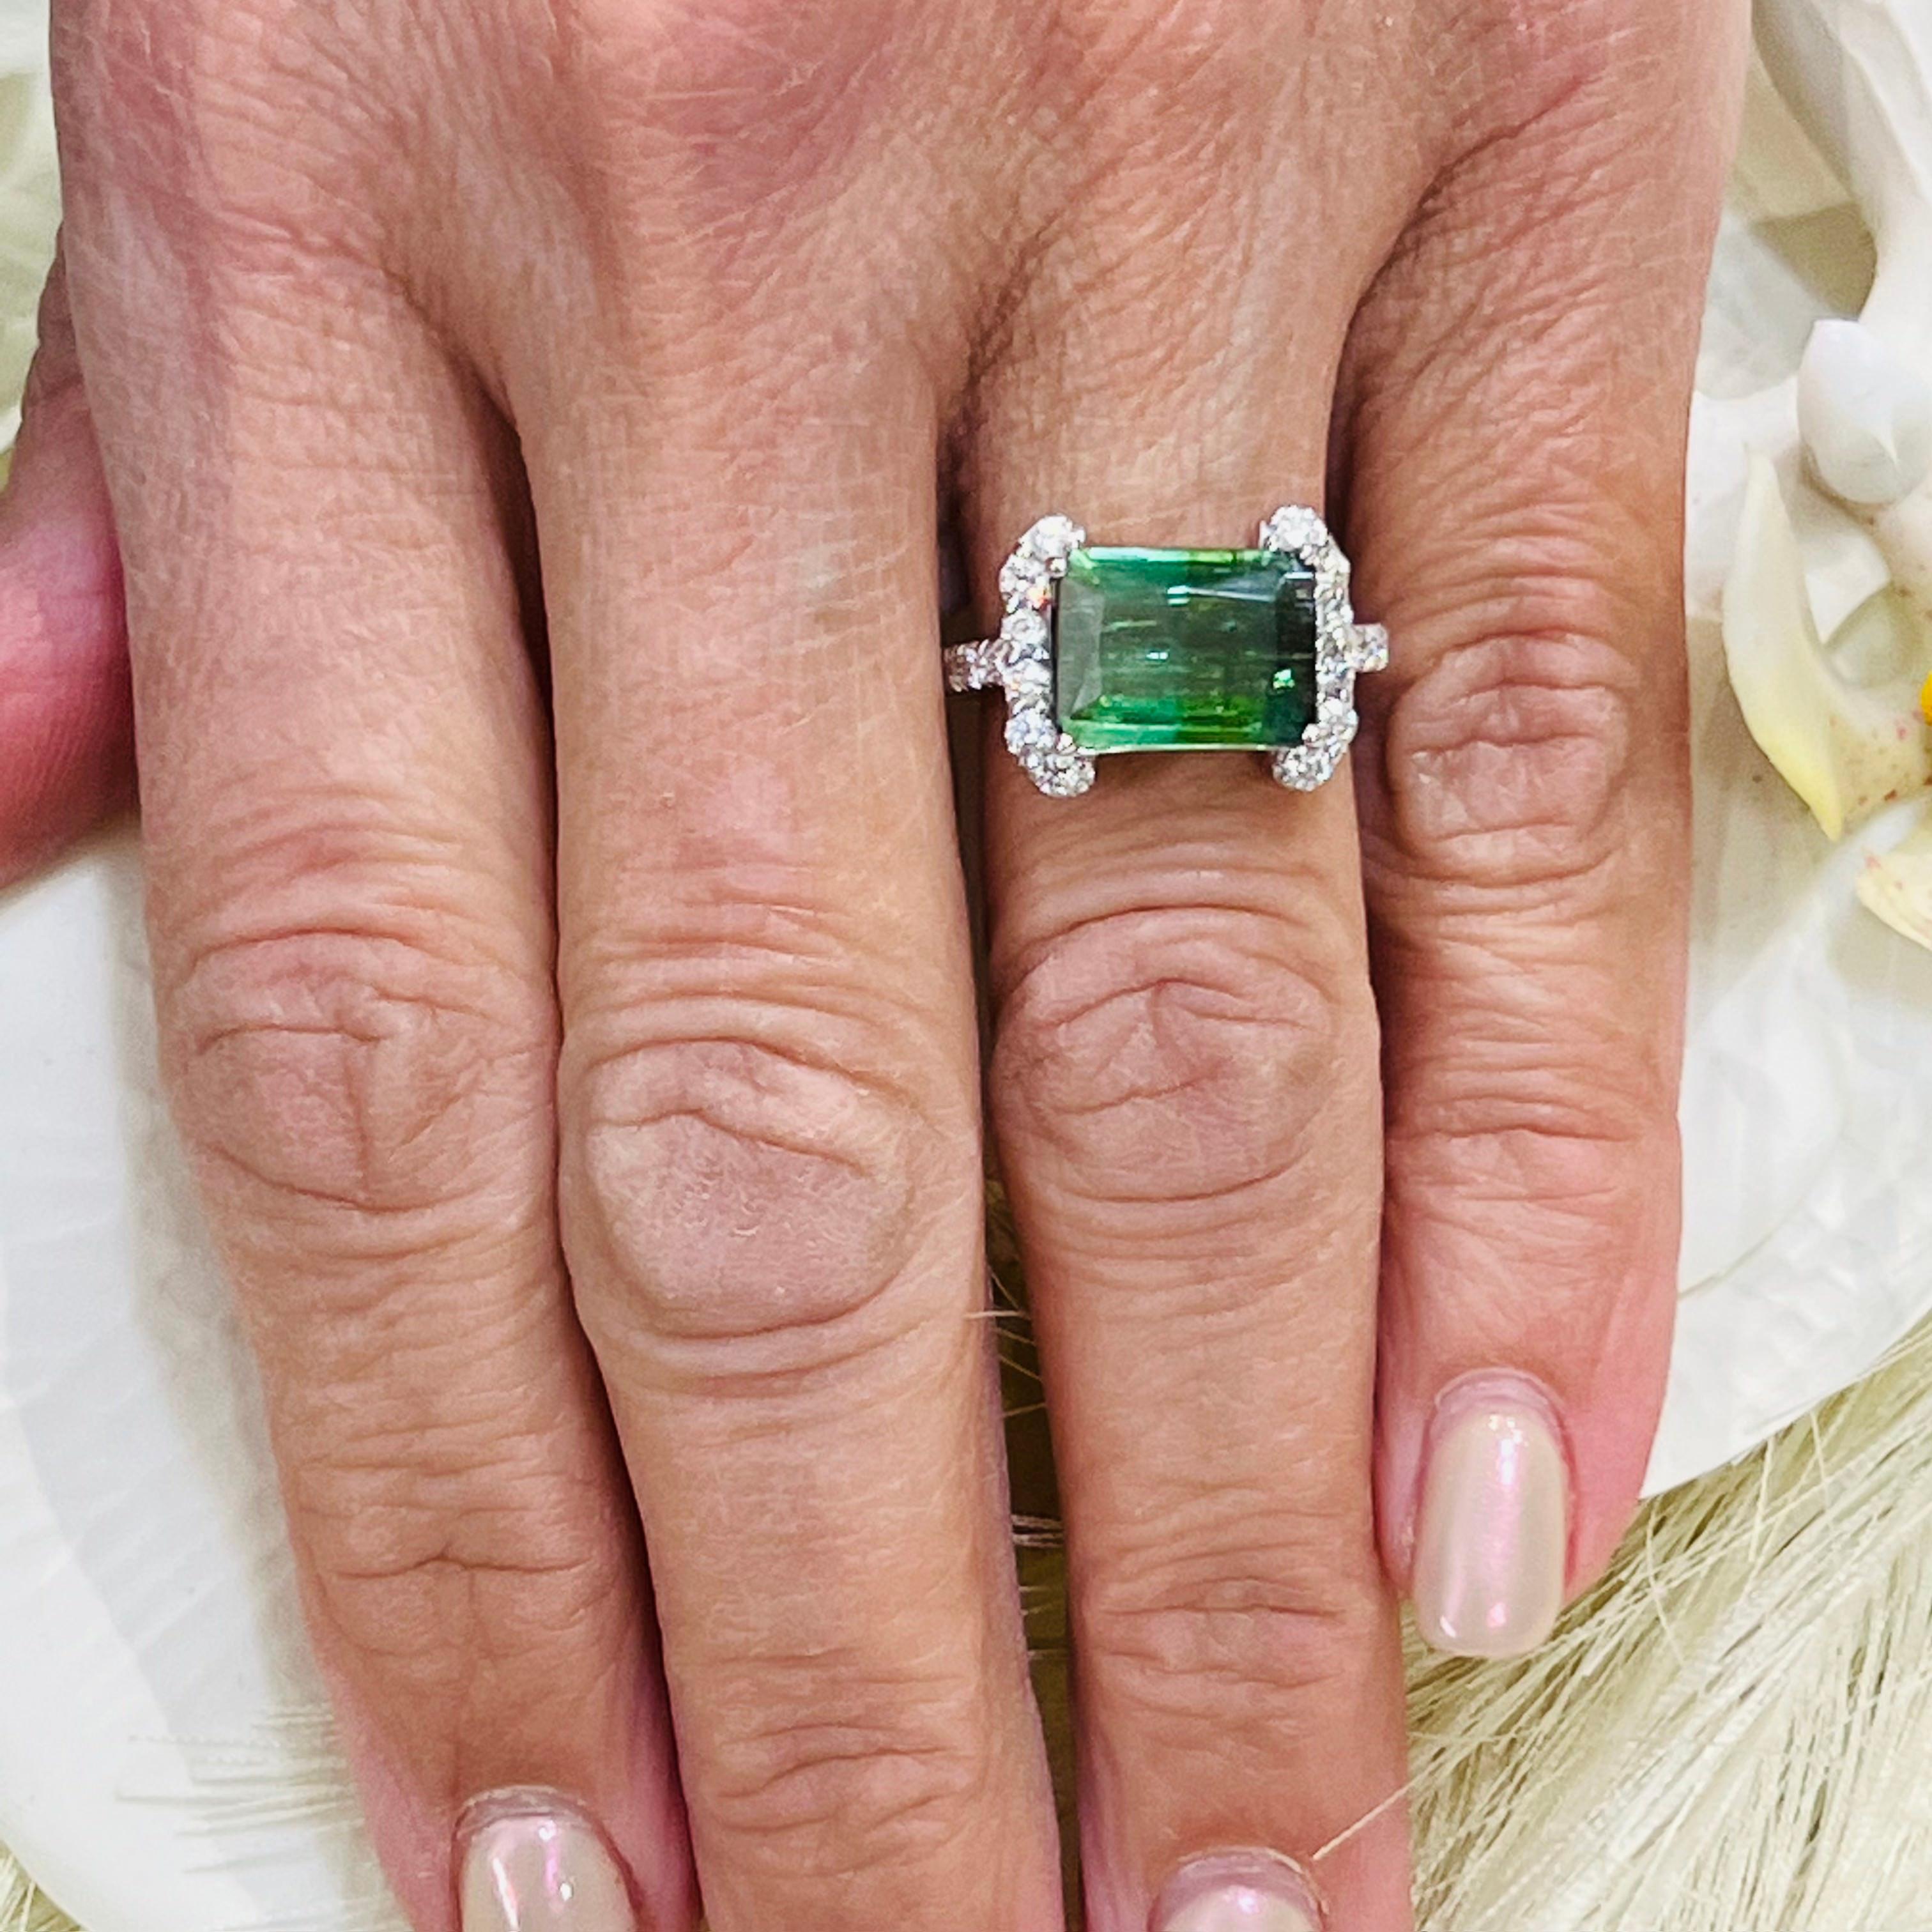 Natürlicher Turmalin Diamant Ring Größe 6,5 14k W Gold 4,2 TCW zertifiziert $5.975 217859

Dies ist ein einzigartiges, maßgeschneidertes, glamouröses Schmuckstück!

Nichts sagt mehr 